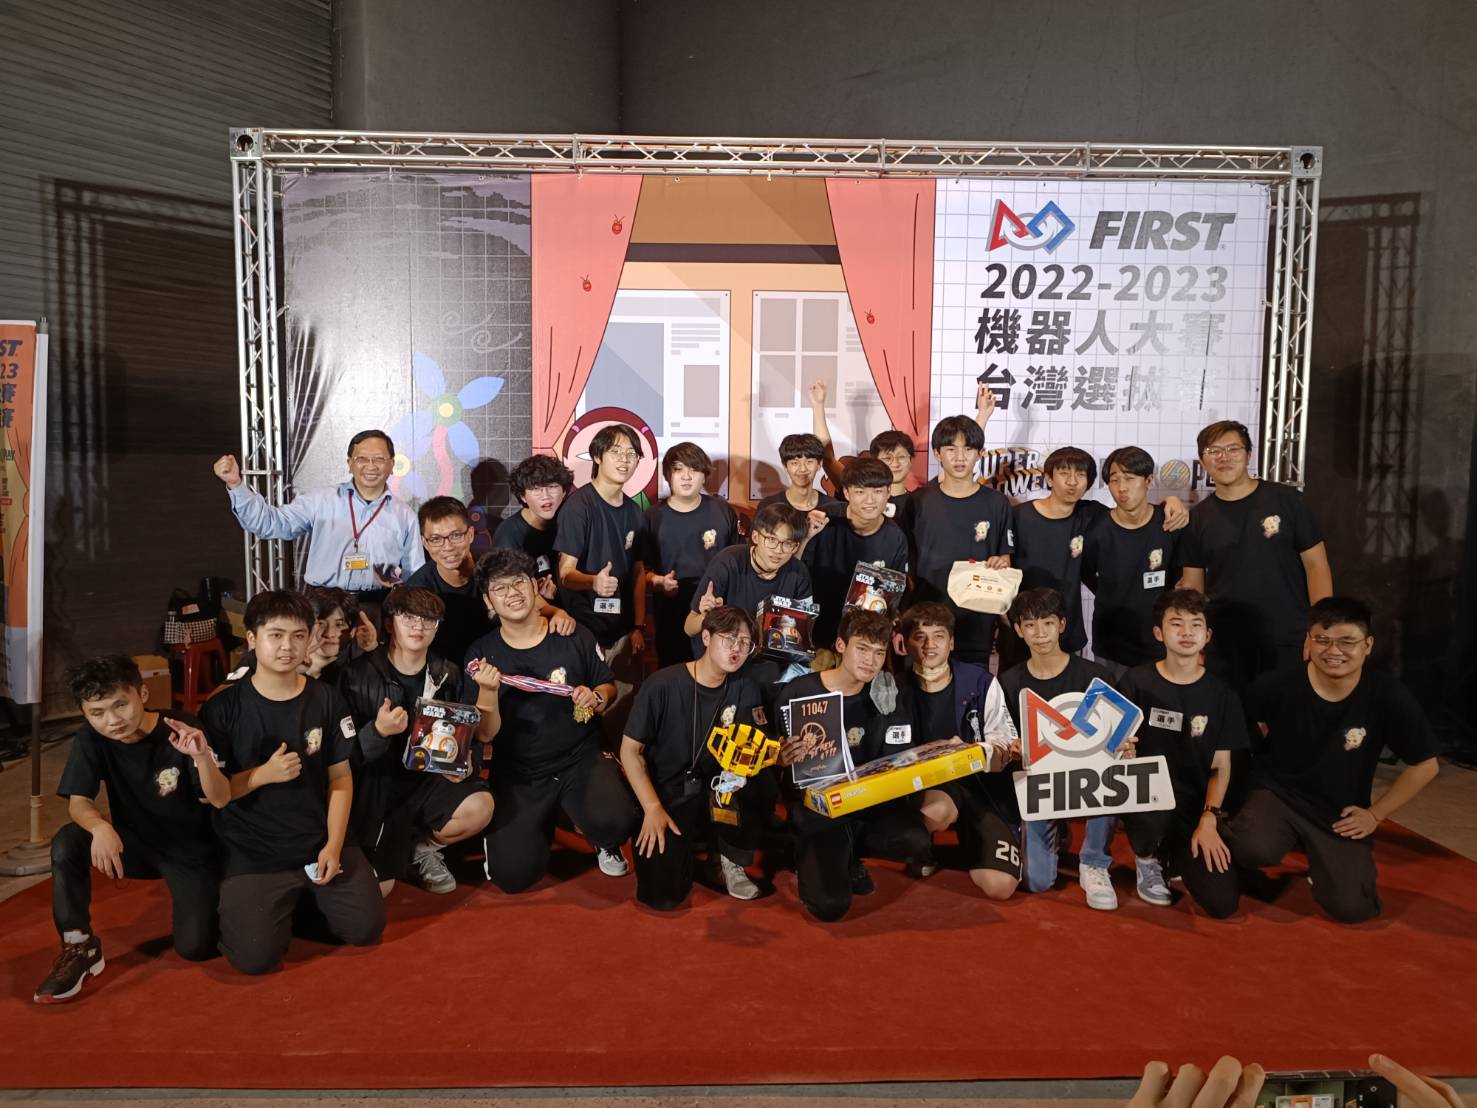 「2022-2023 FIRST 機器人大賽台灣選拔賽」機器人大賽 科工館盛大開跑